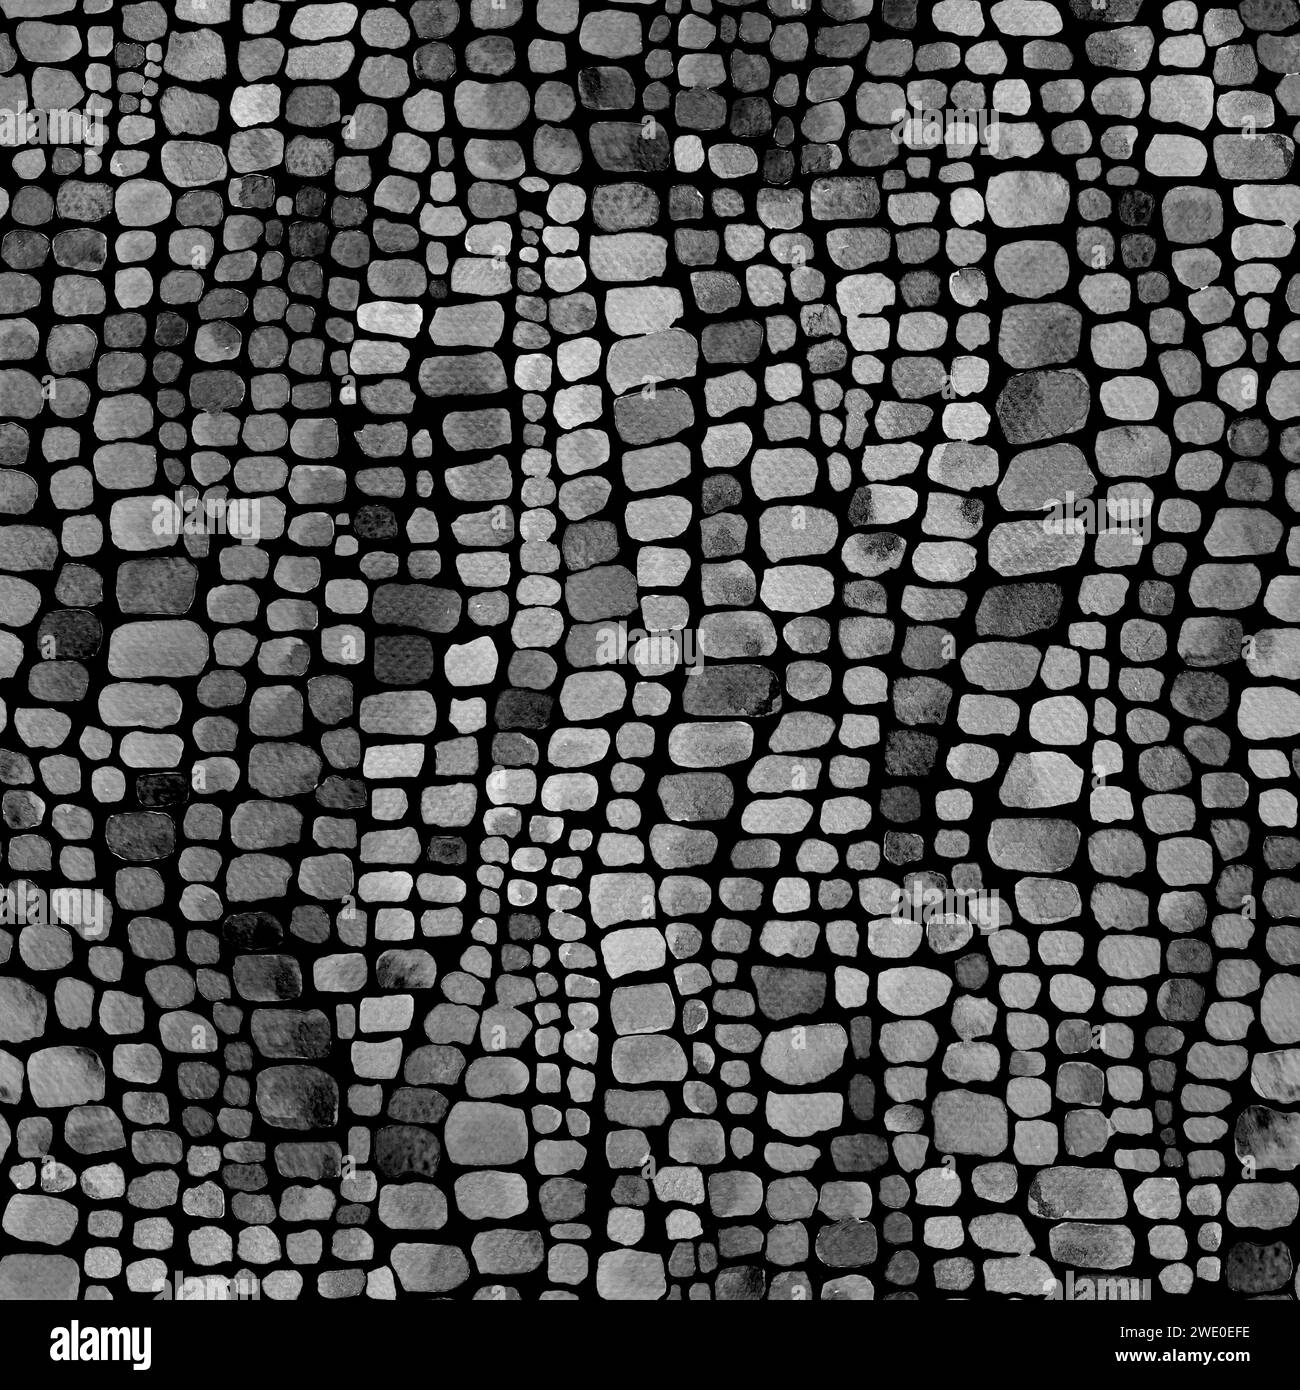 Abstracto cocodrilo reptil escalas acuarela blanco y negro fondo sin fisuras. Acuarela dibujado a mano piel animal impresión de escala. Textura geométrica. Foto de stock